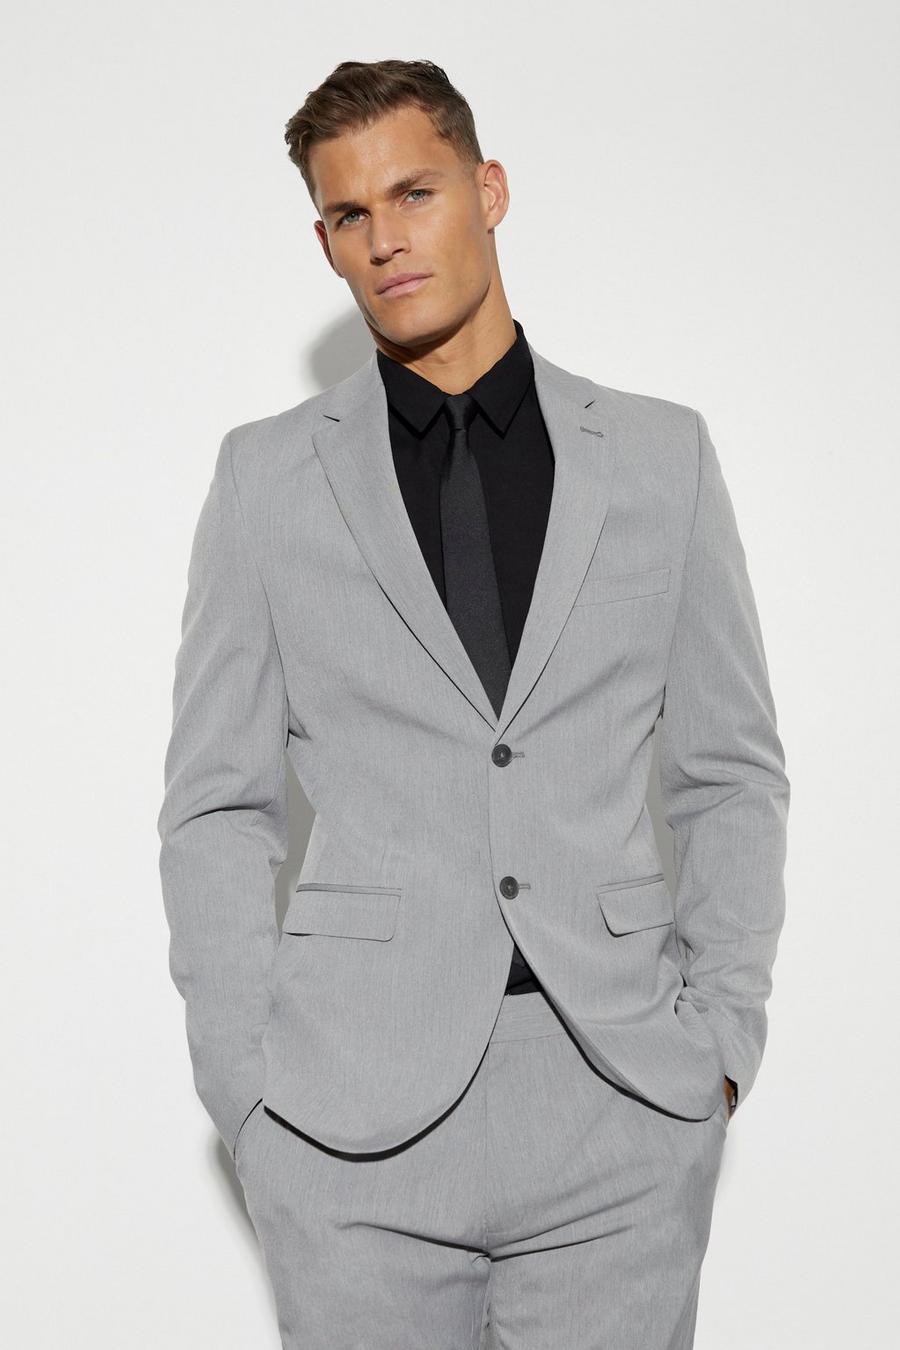 אפור gris ז'קט חליפה סקיני עם רכיסה אחת לגברים גבוהים